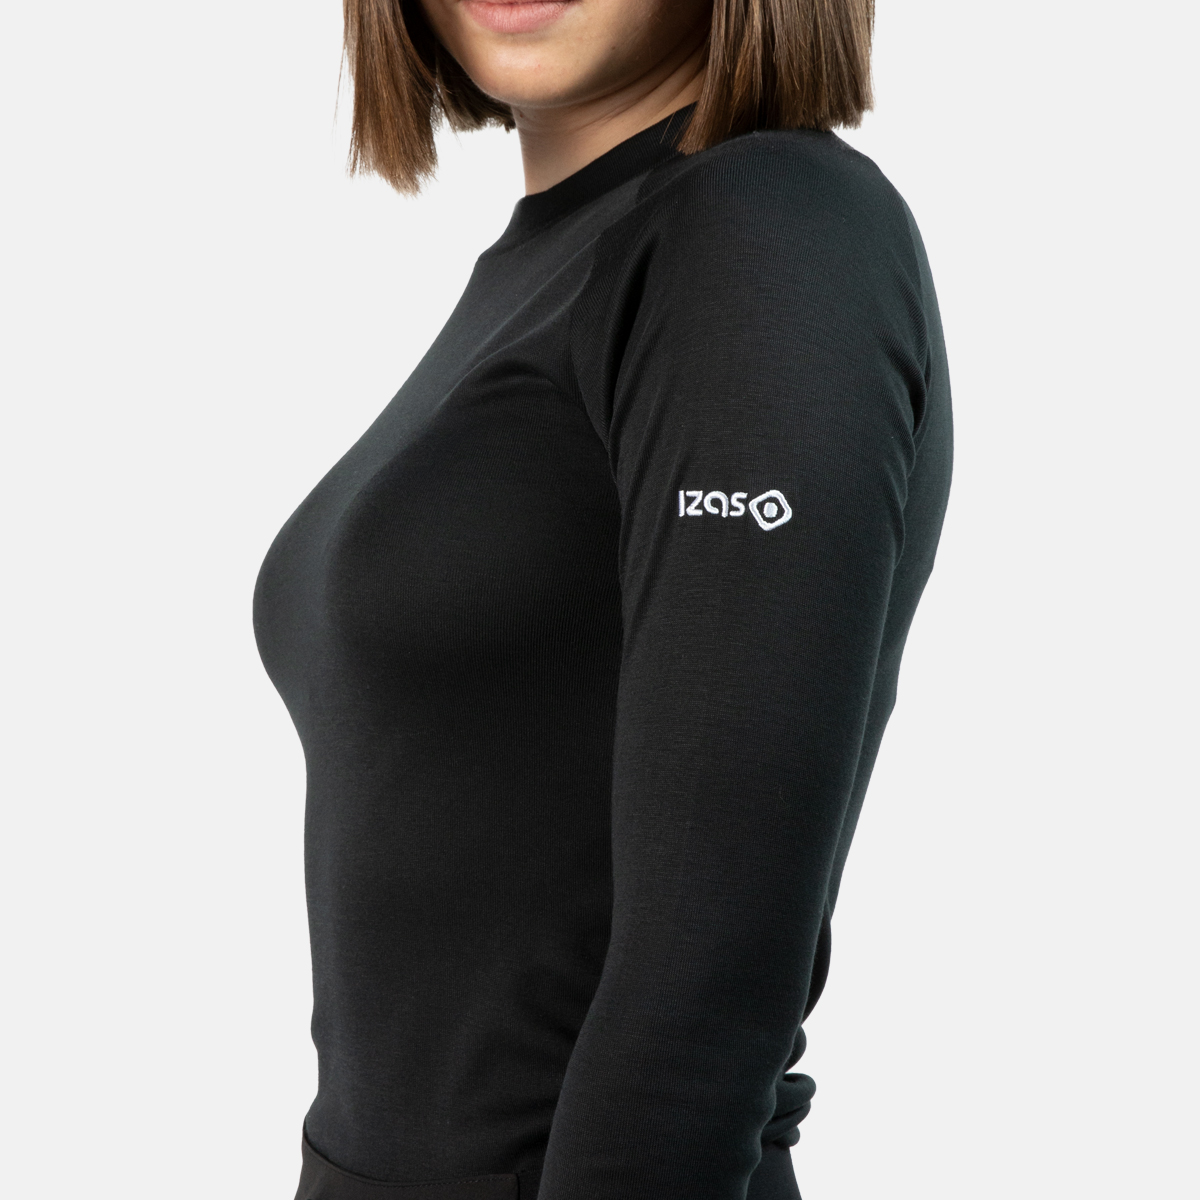 camiseta mujer termica manga-larga. Calor termal transpirable